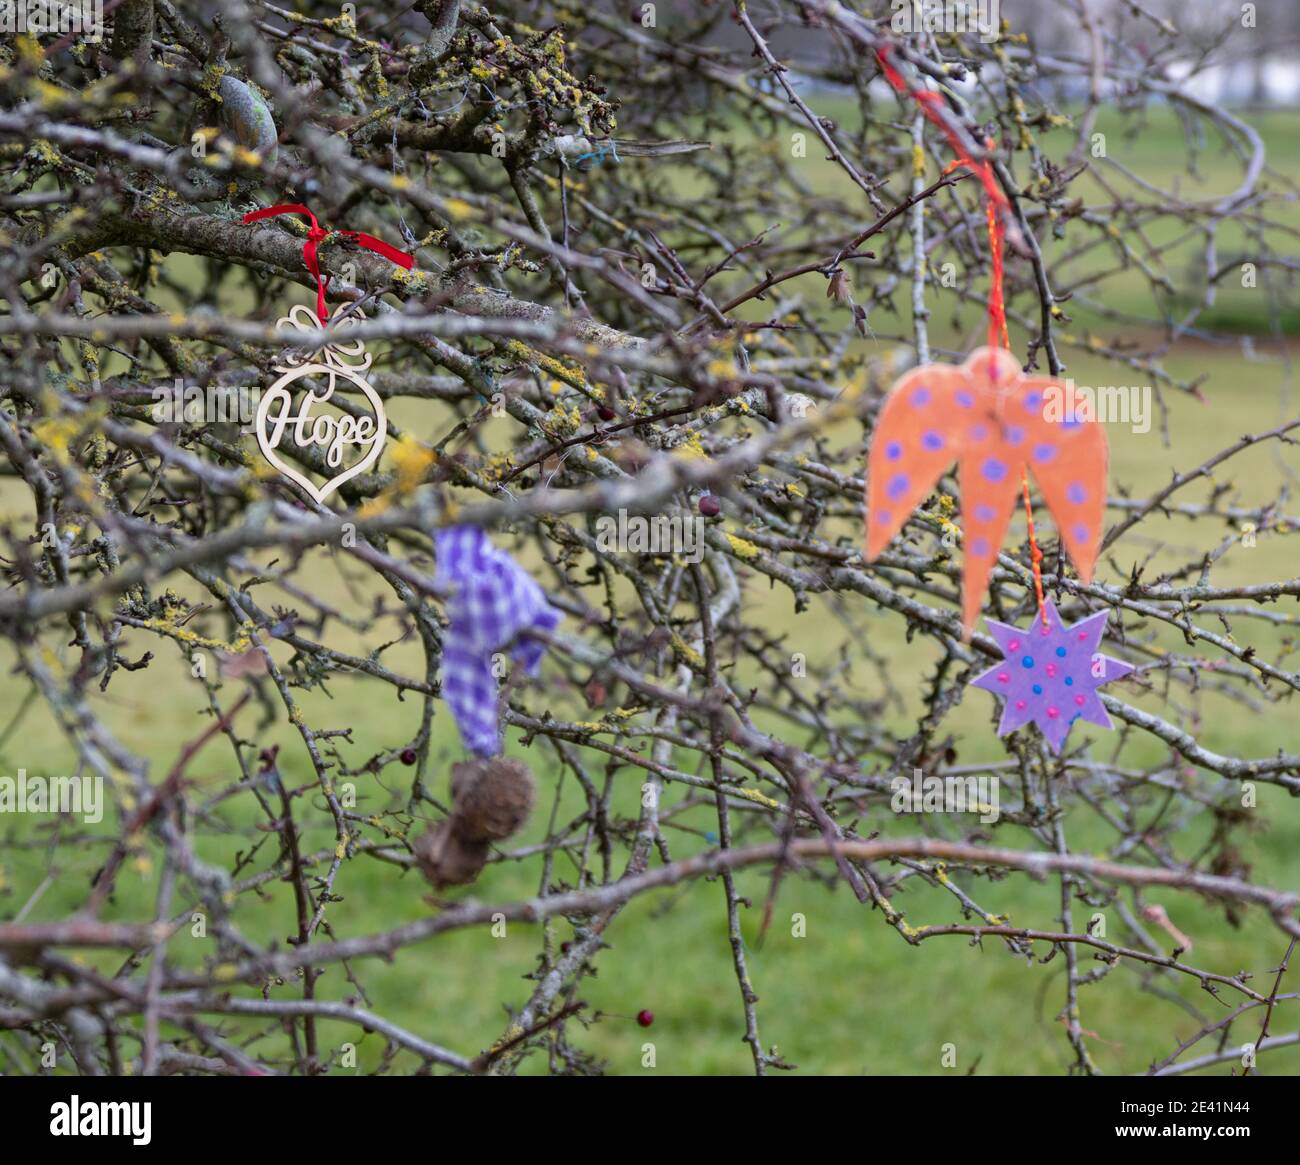 Trauriges Relikt des Wish Tree Hawthorn auf den Downs Bristol während der Corinavirus-Pandemie von 2020/21 mit Hoffnung und ein paar Wünschen übrig Stockfoto